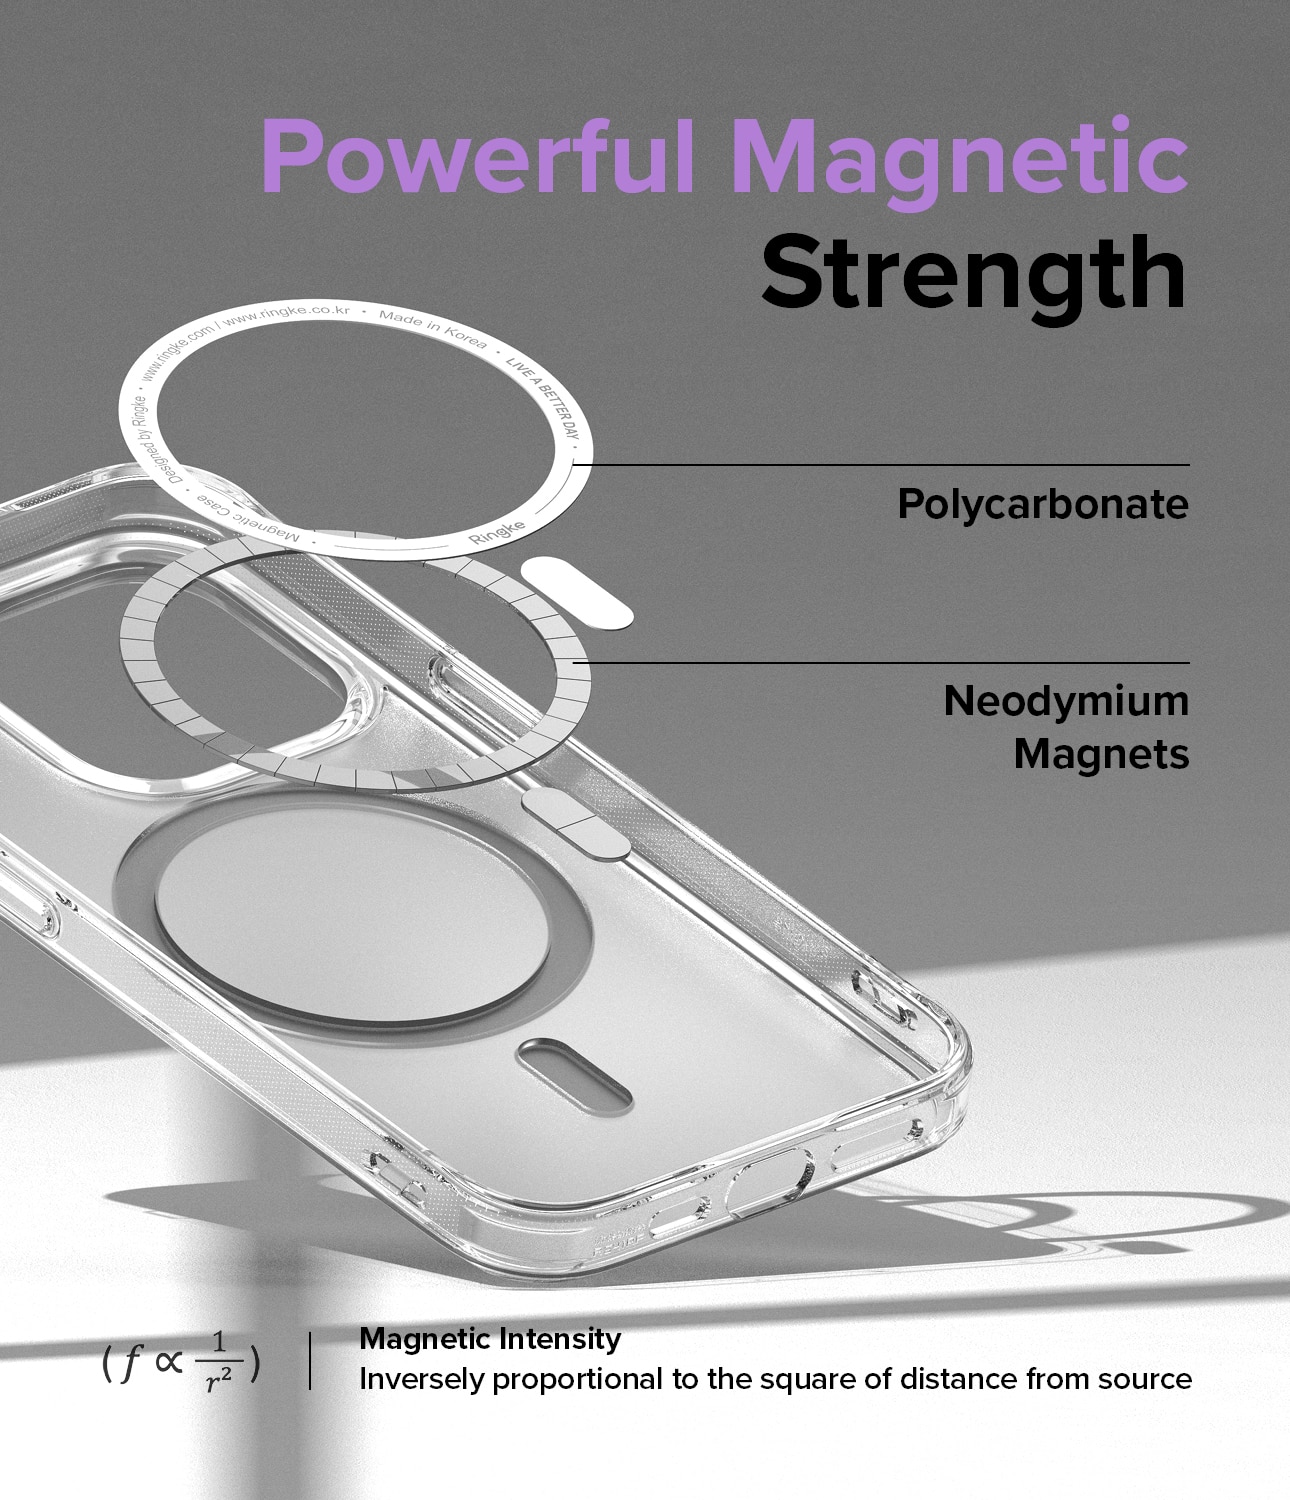 Funda Fusion Magnetic iPhone 14 Pro Max Transparente